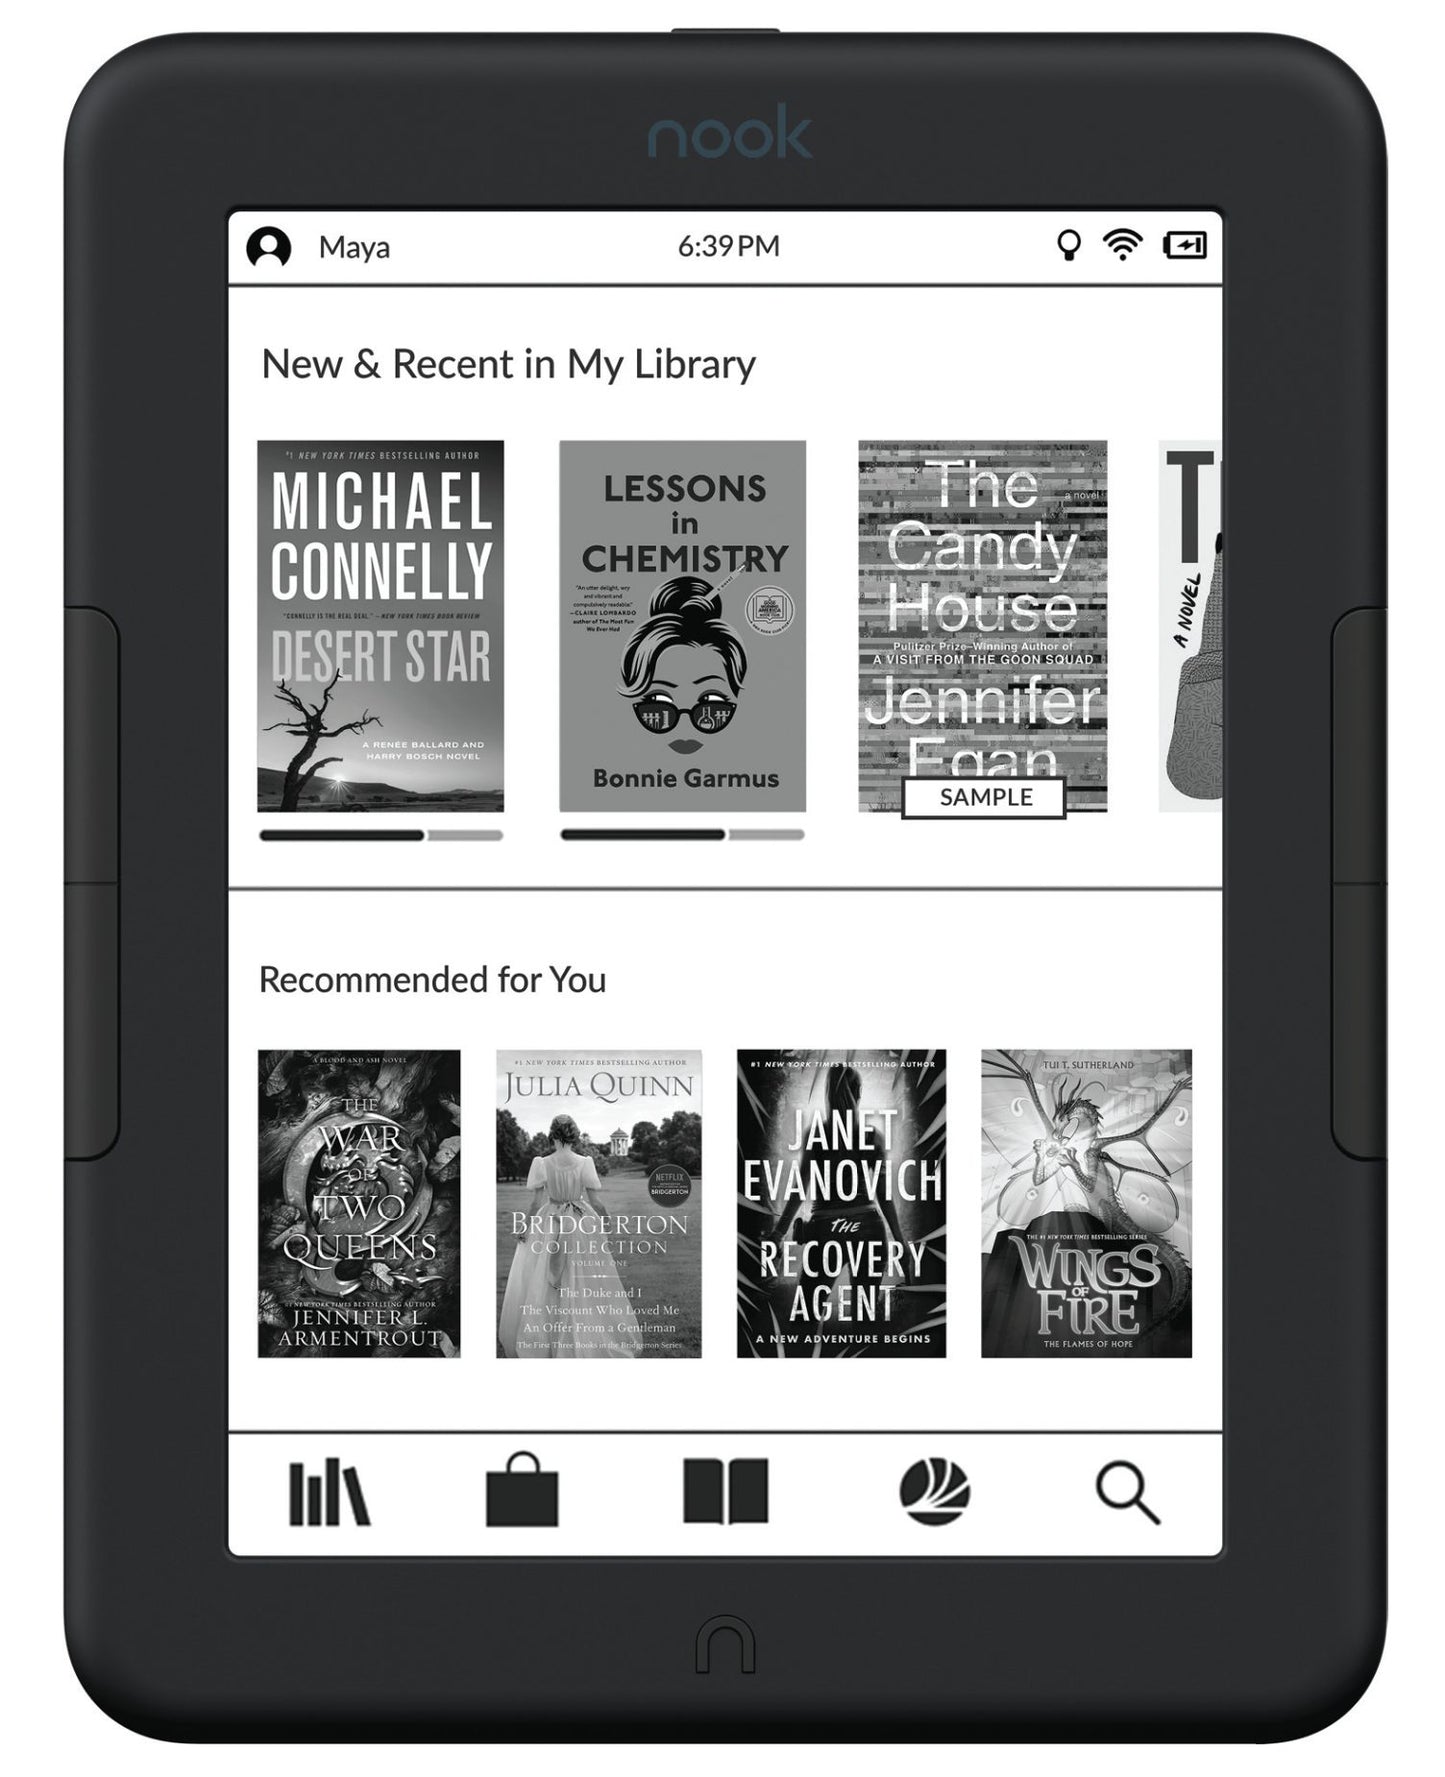 Barnes and Noble Nook Glowlight 4e e-reader